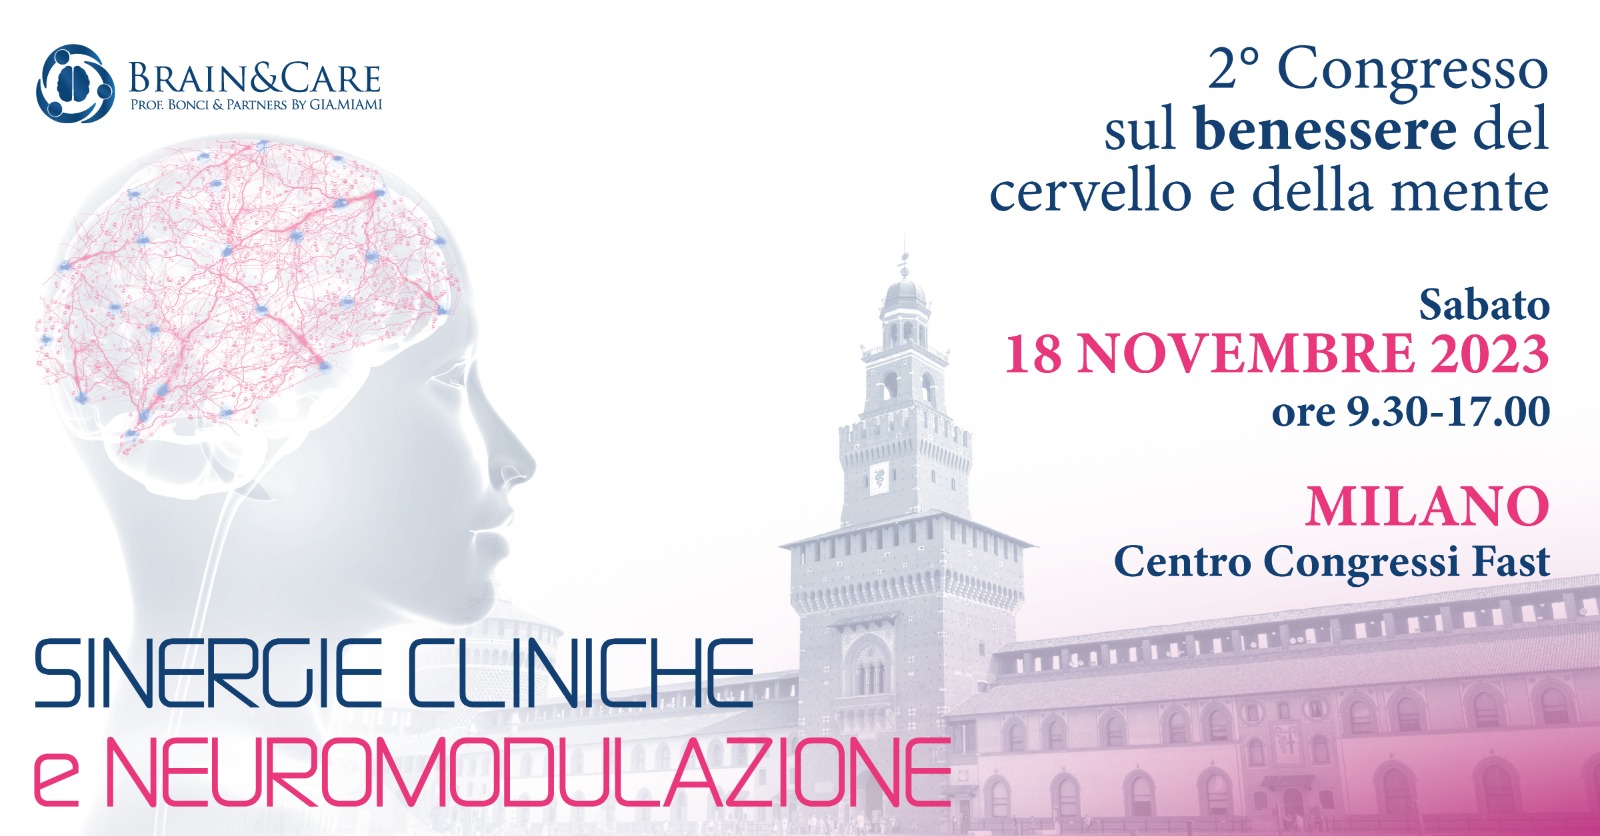 Salute della mente e del cervello: che cosa cambia? A Milano il 18 novembre al “2° Congresso sul benessere del cervello e della mente” esperti a confronto per un futuro migliore